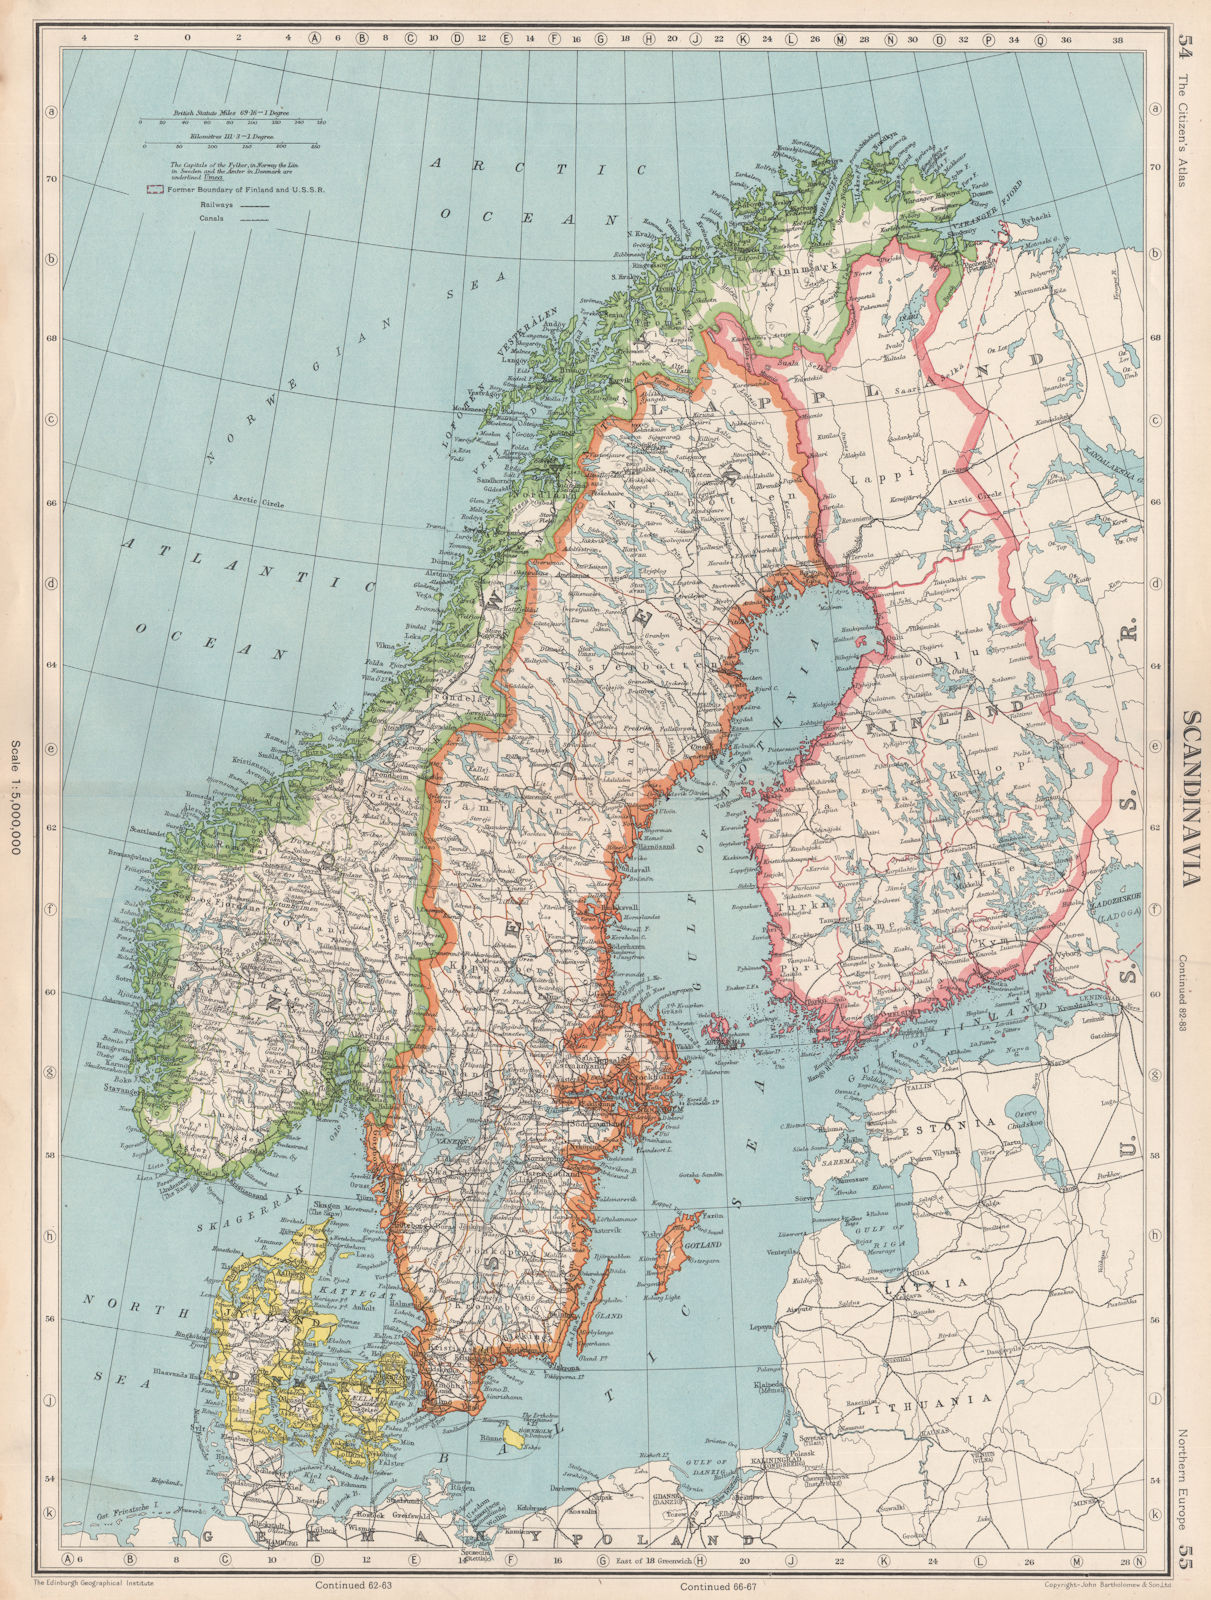 SCANDINAVIA. Sweden Norway Denmark Finland (shows < 1940 borders)  1952 map